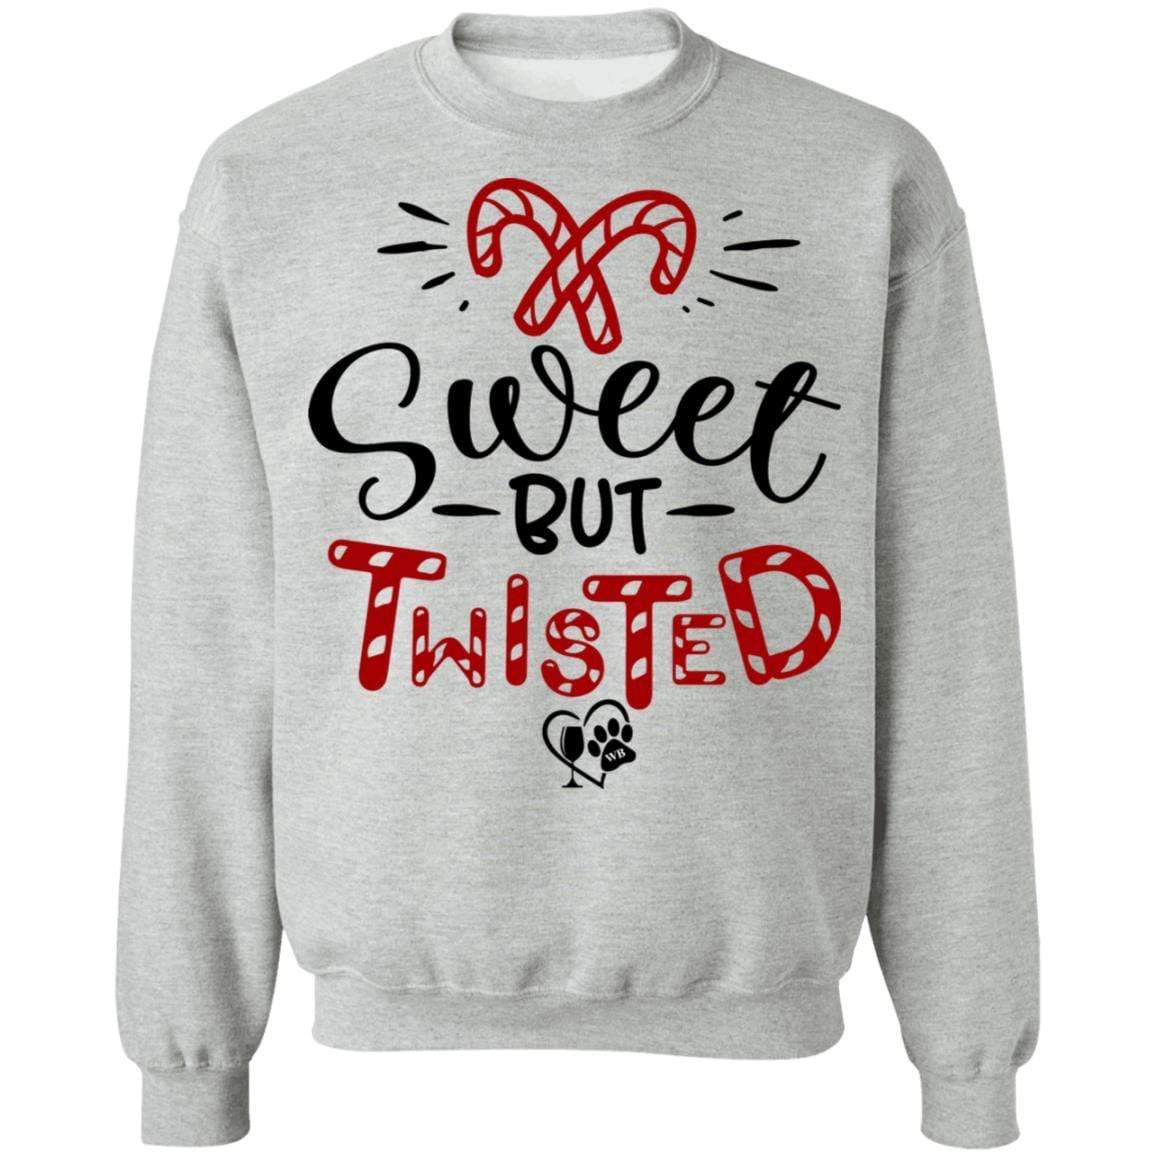 Sweatshirts Sport Grey / S WineyBitches.Co "Sweet But Twisted" Crewneck Pullover Sweatshirt  8 oz. WineyBitchesCo